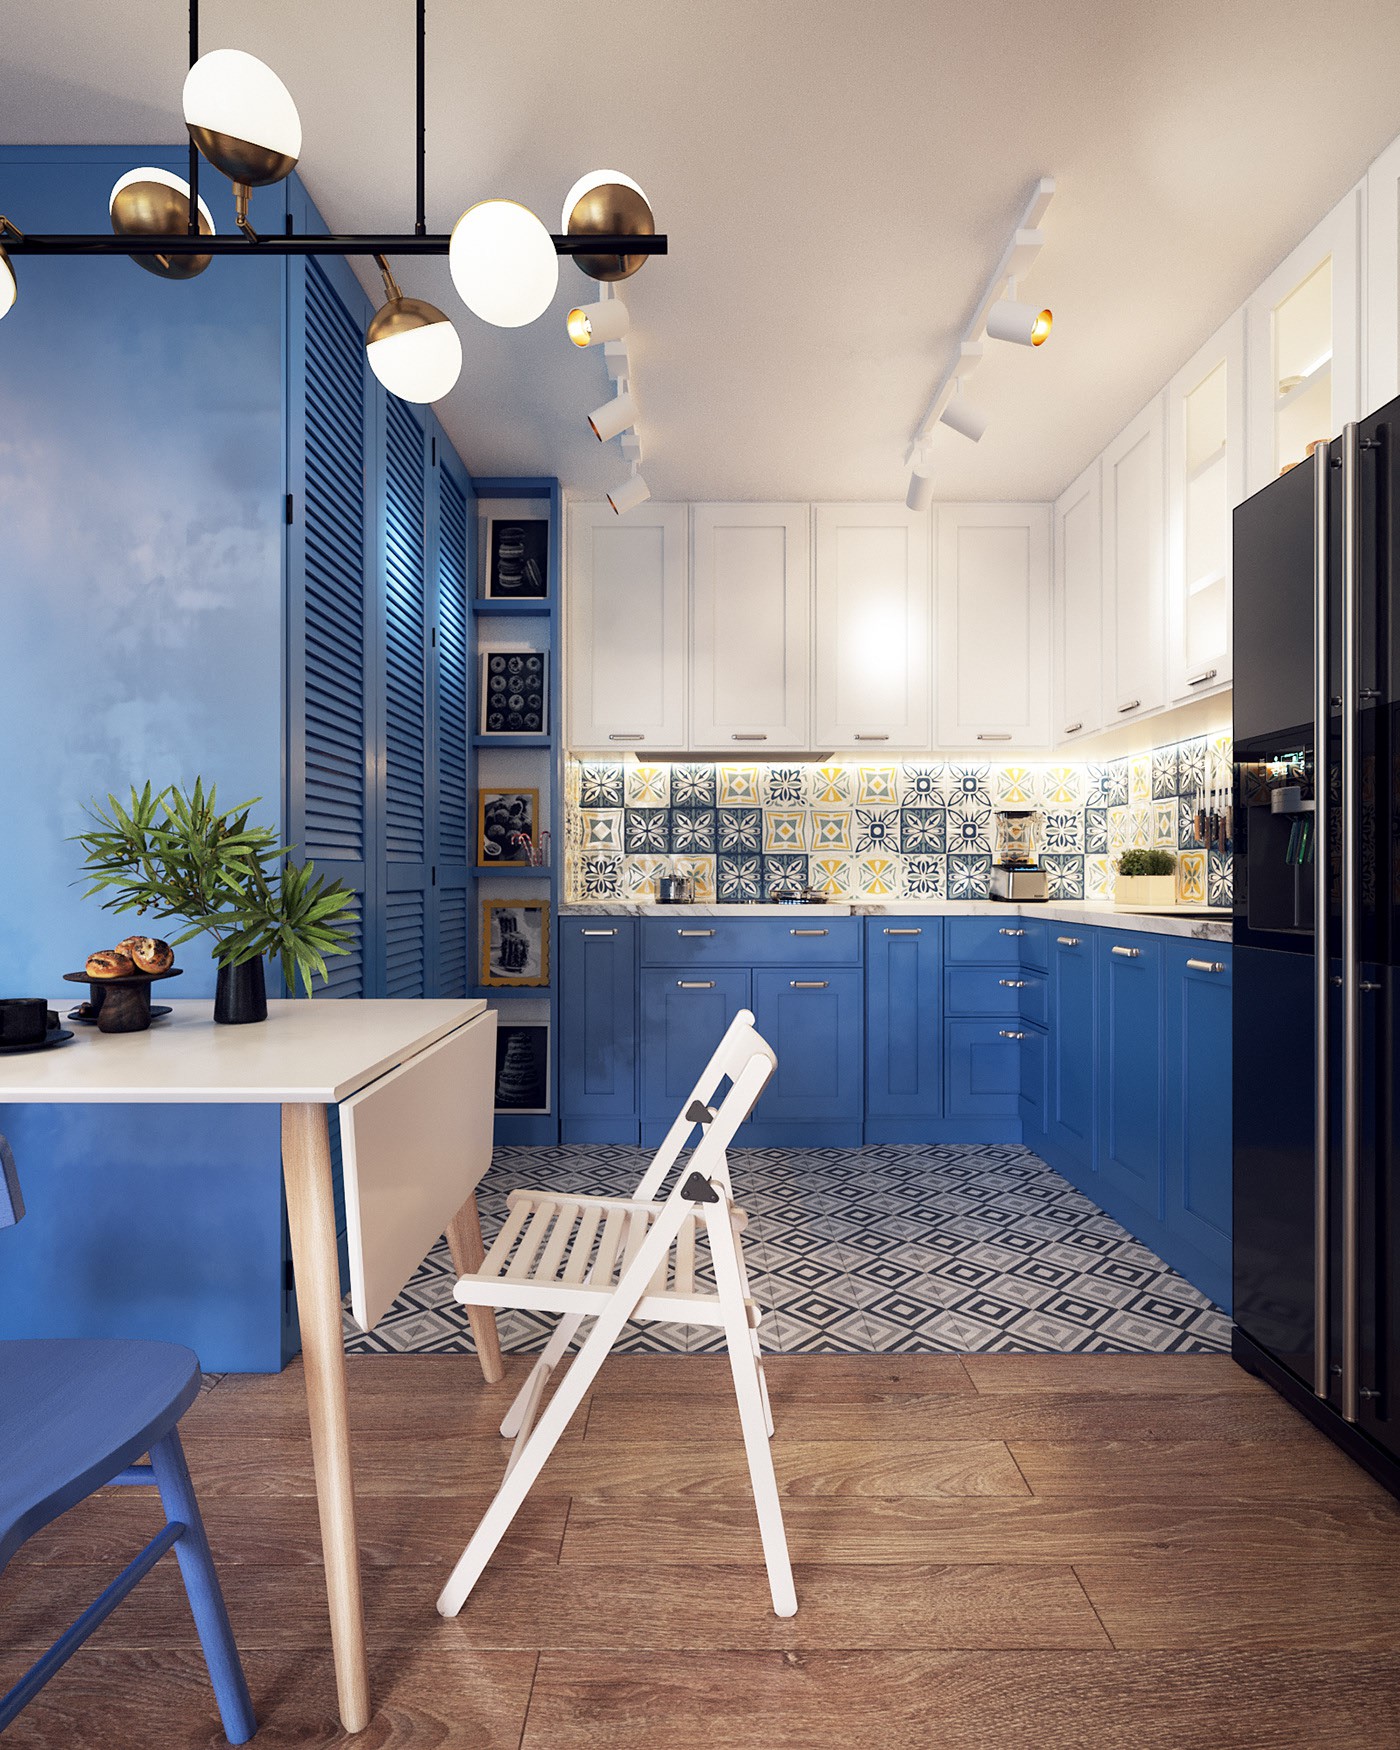 Hình ảnh toàn cảnh phòng bếp với tủ trắng, xanh dương, tường ốp gạch bông, bàn ăn dạng gấp, cây xanh